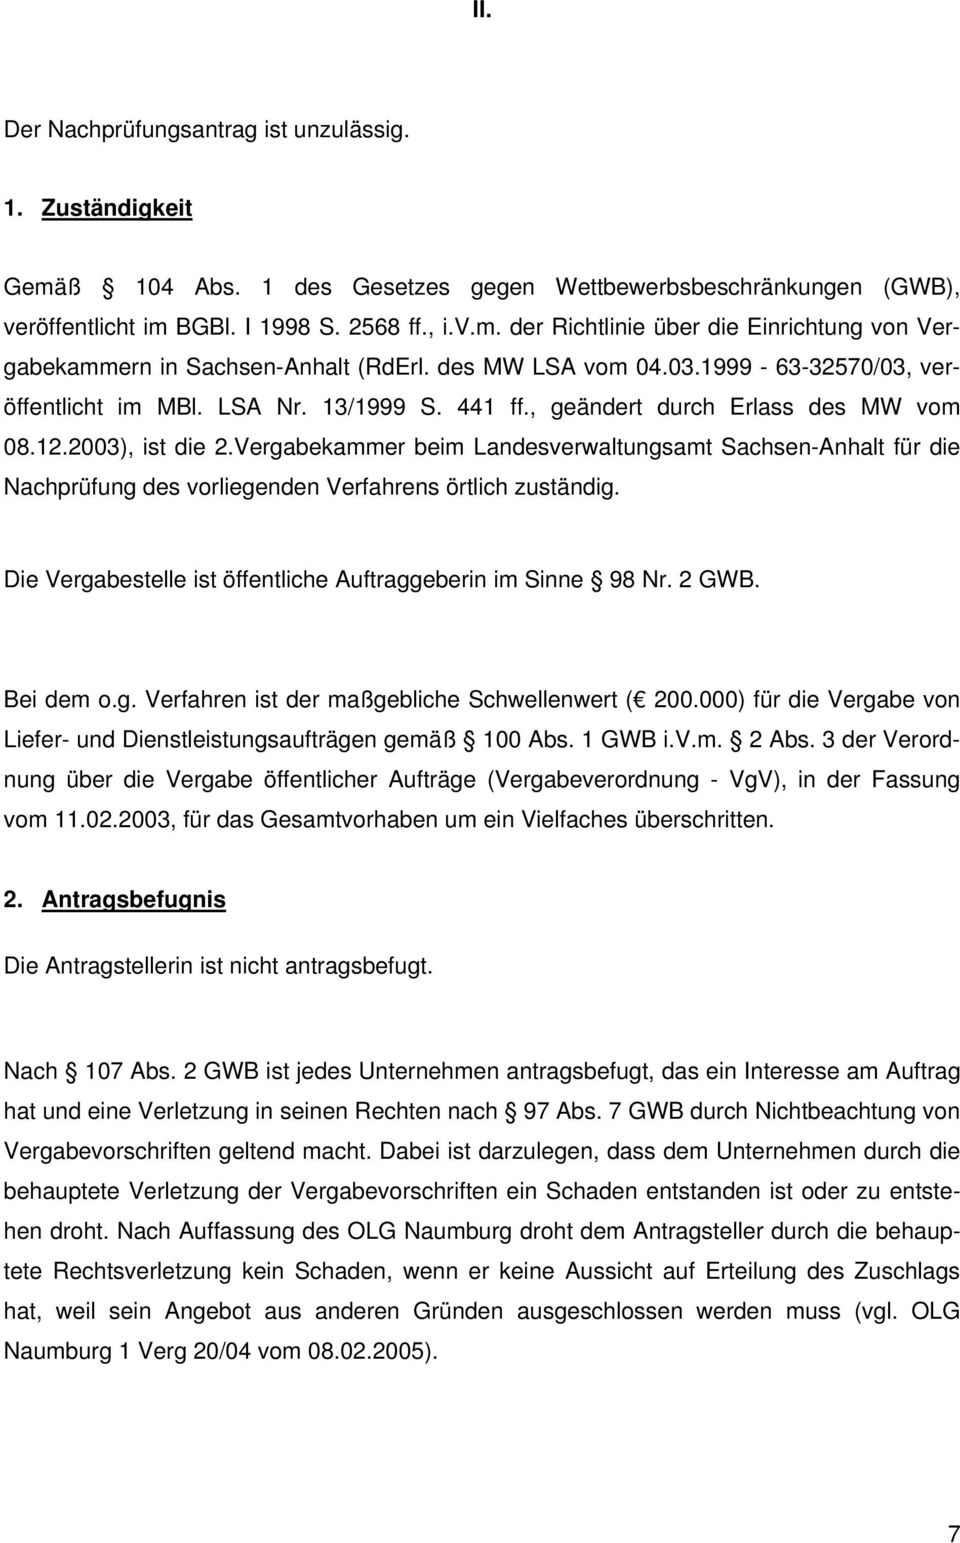 Vergabekammer beim Landesverwaltungsamt Sachsen-Anhalt für die Nachprüfung des vorliegenden Verfahrens örtlich zuständig. Die Vergabestelle ist öffentliche Auftraggeberin im Sinne 98 Nr. 2 GWB.